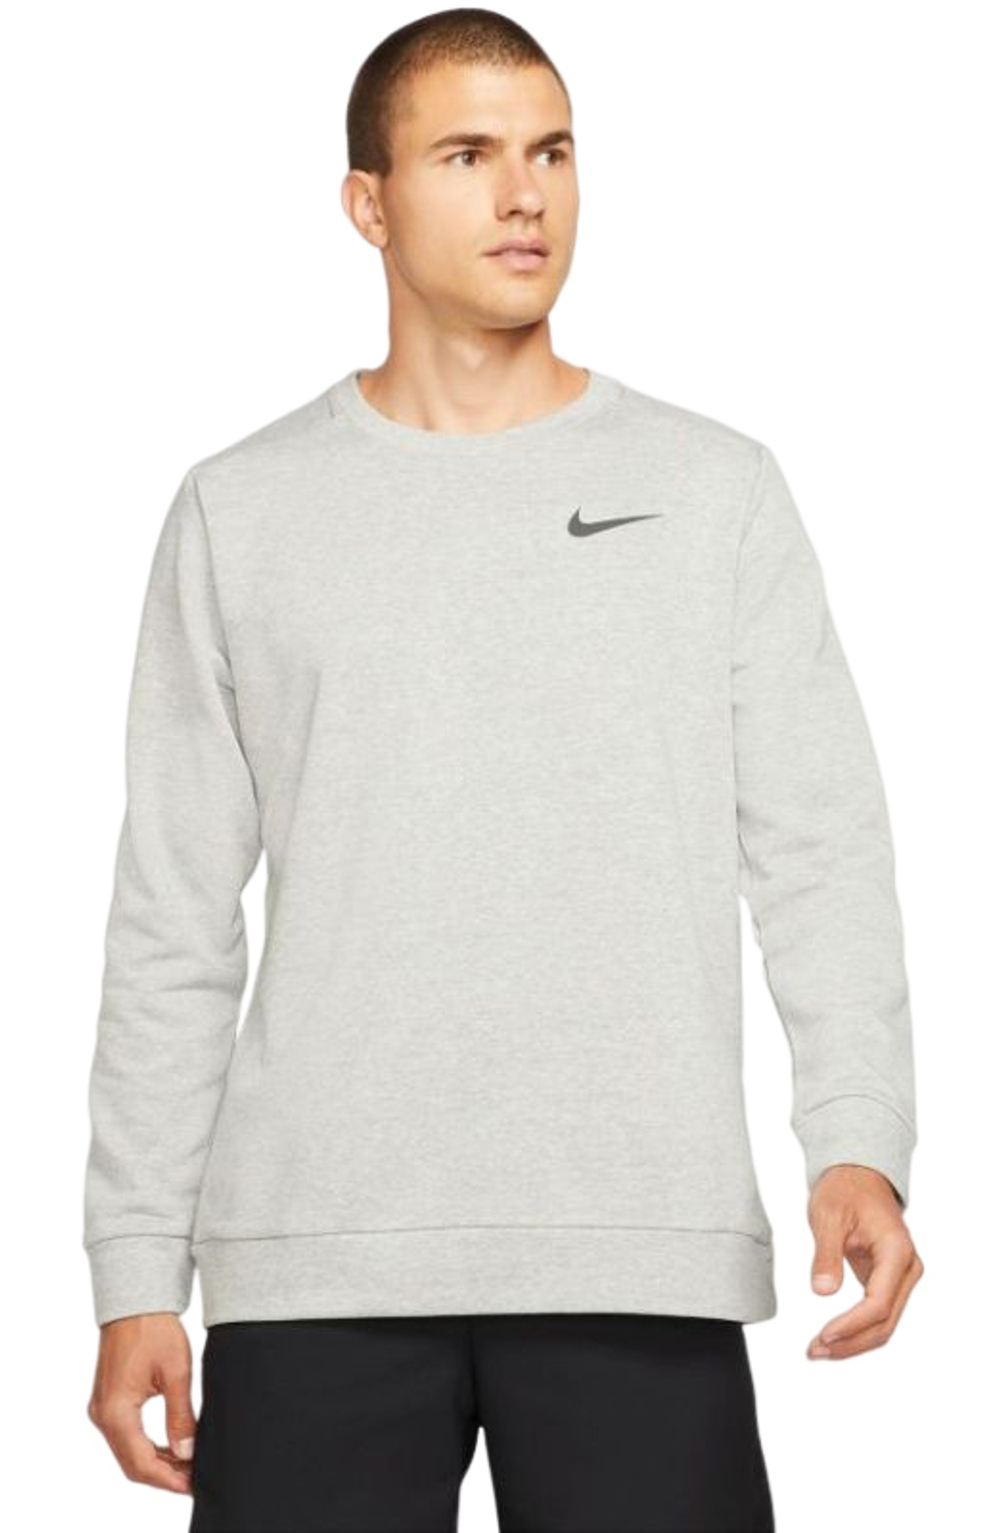 Мужская теннисная футболка Nike Solid Dri-Fit Crew - black/white